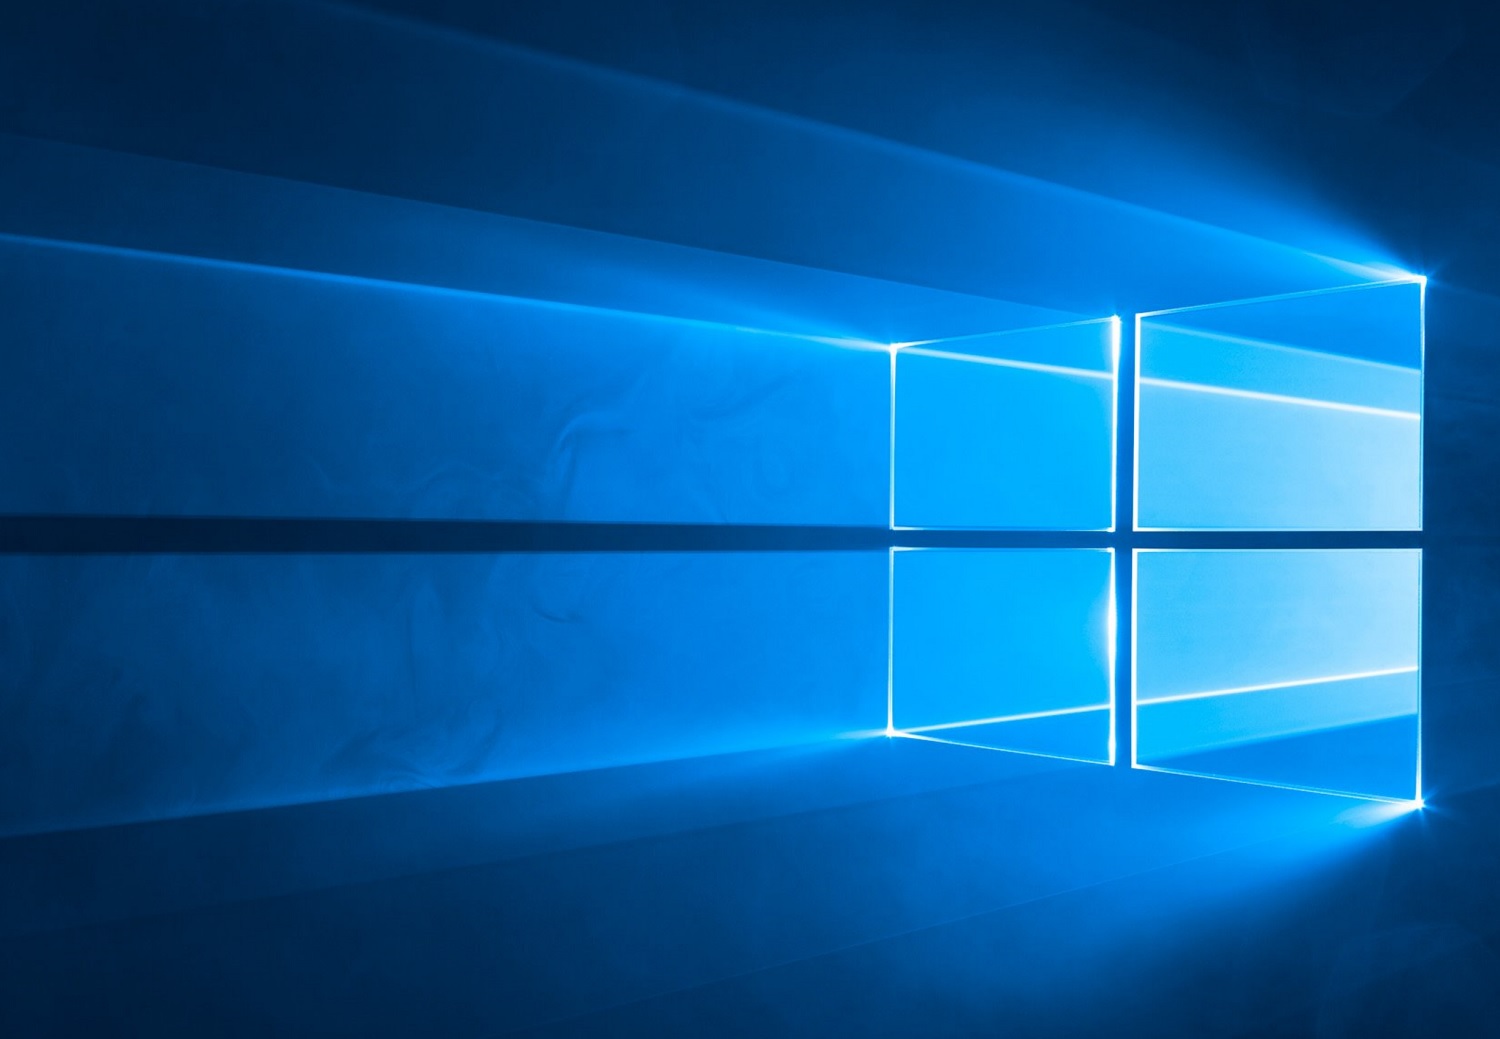 Microsoft Windows 10 Mai 2019-Update ab sofort verfügbar - Notebookcheck.com News